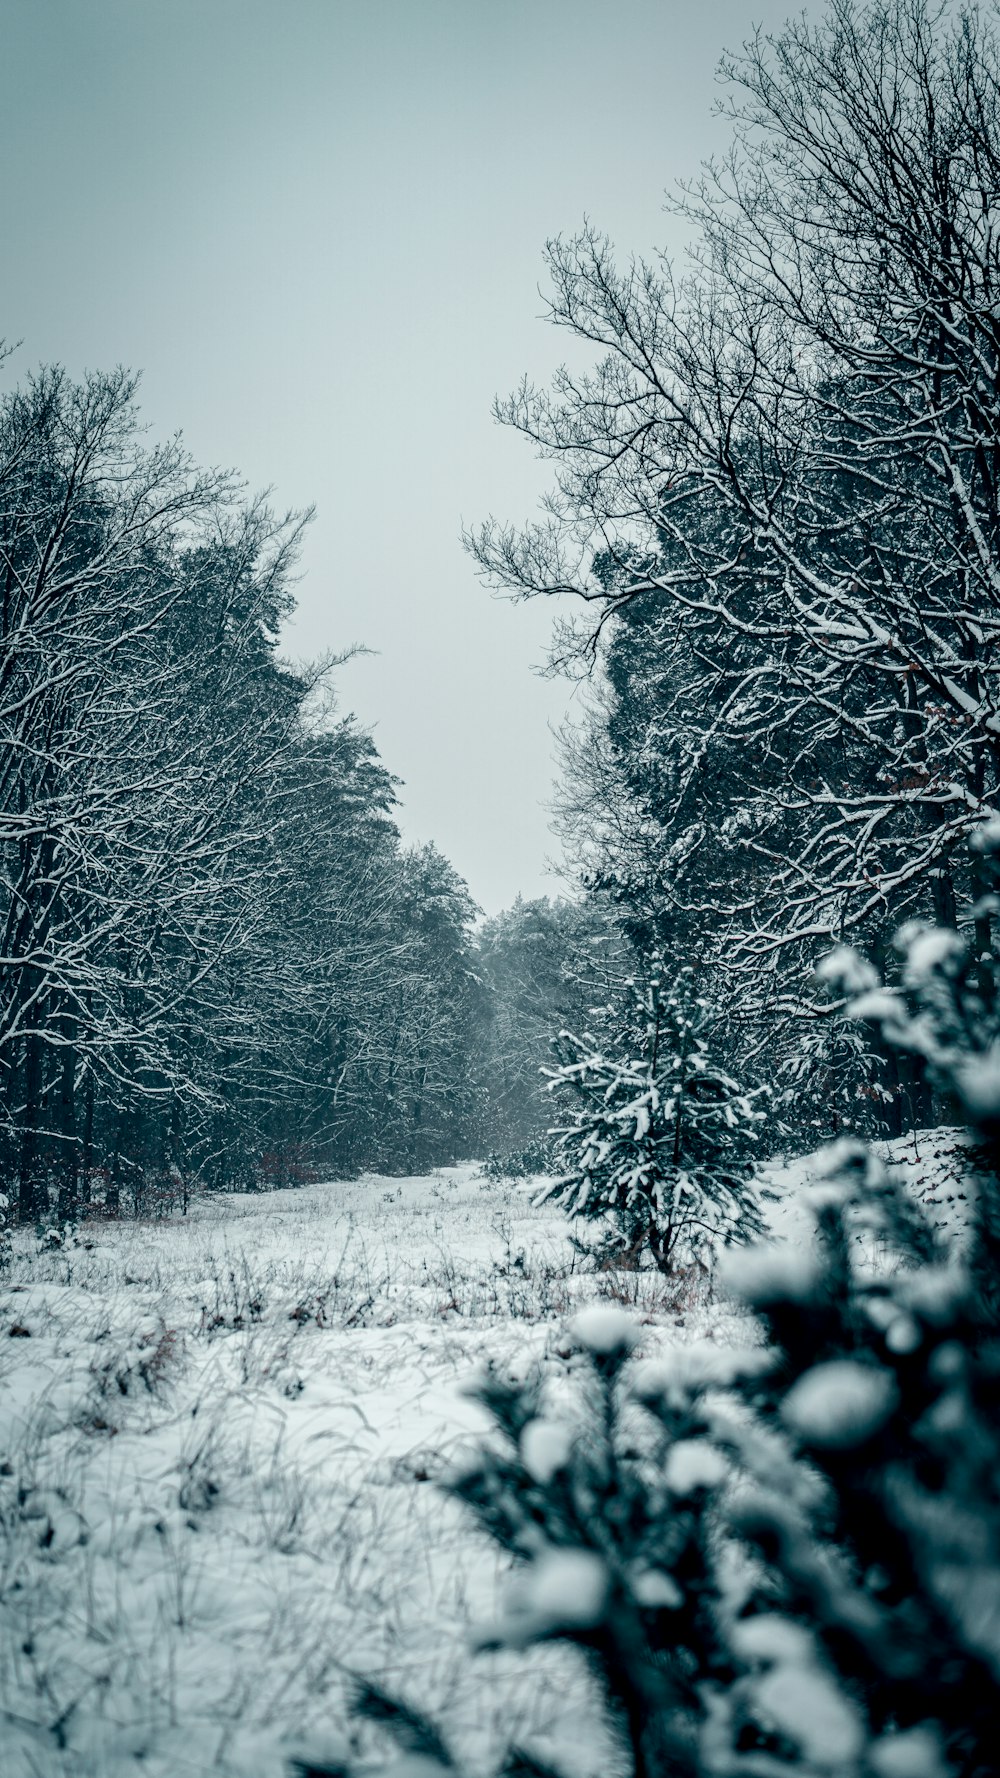 Un camino cubierto de nieve rodeado de árboles y arbustos